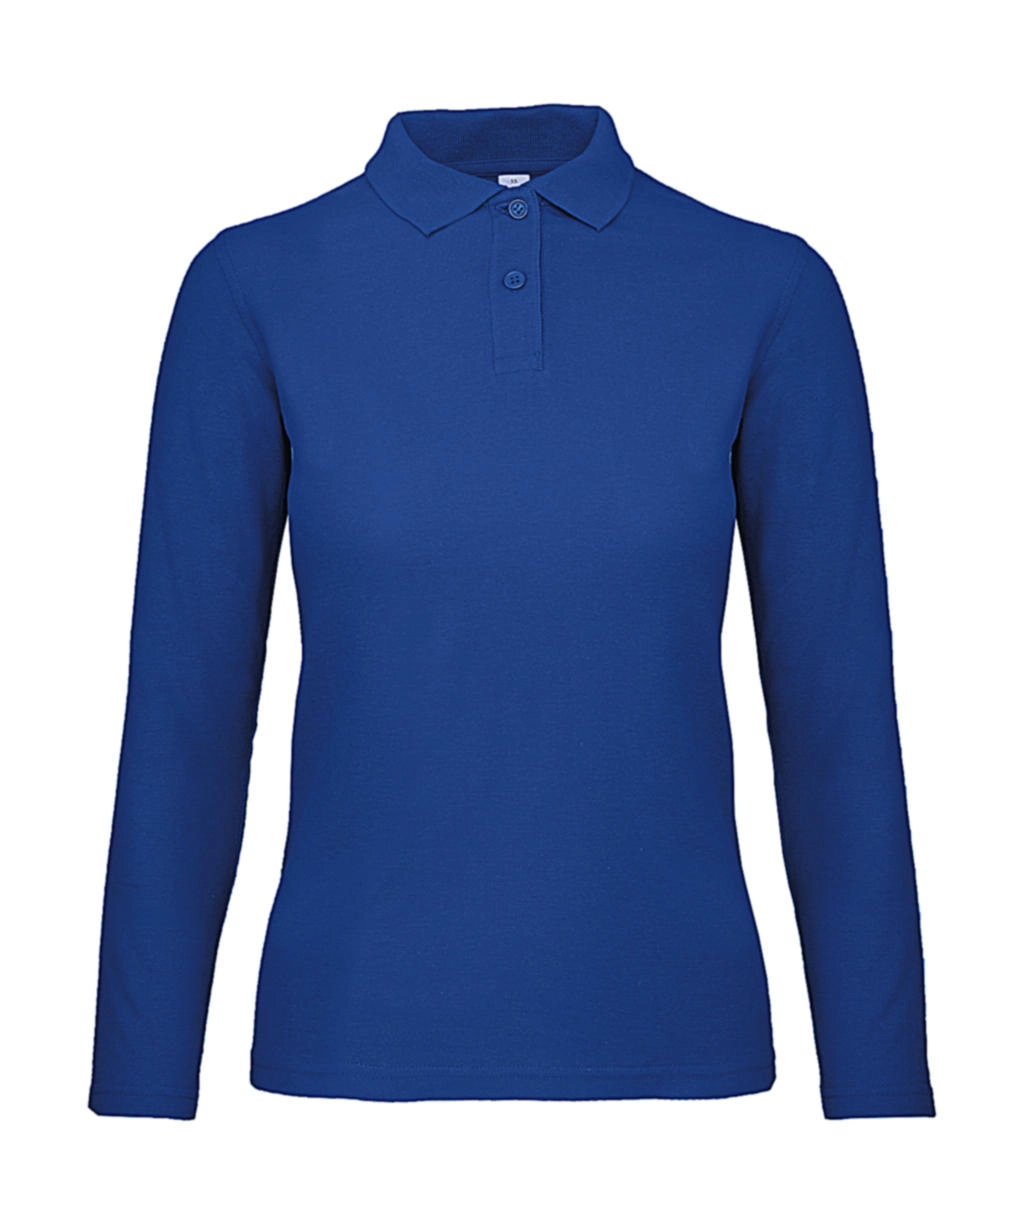 ID.001 LSL /women Polo zum Besticken und Bedrucken in der Farbe Royal Blue mit Ihren Logo, Schriftzug oder Motiv.